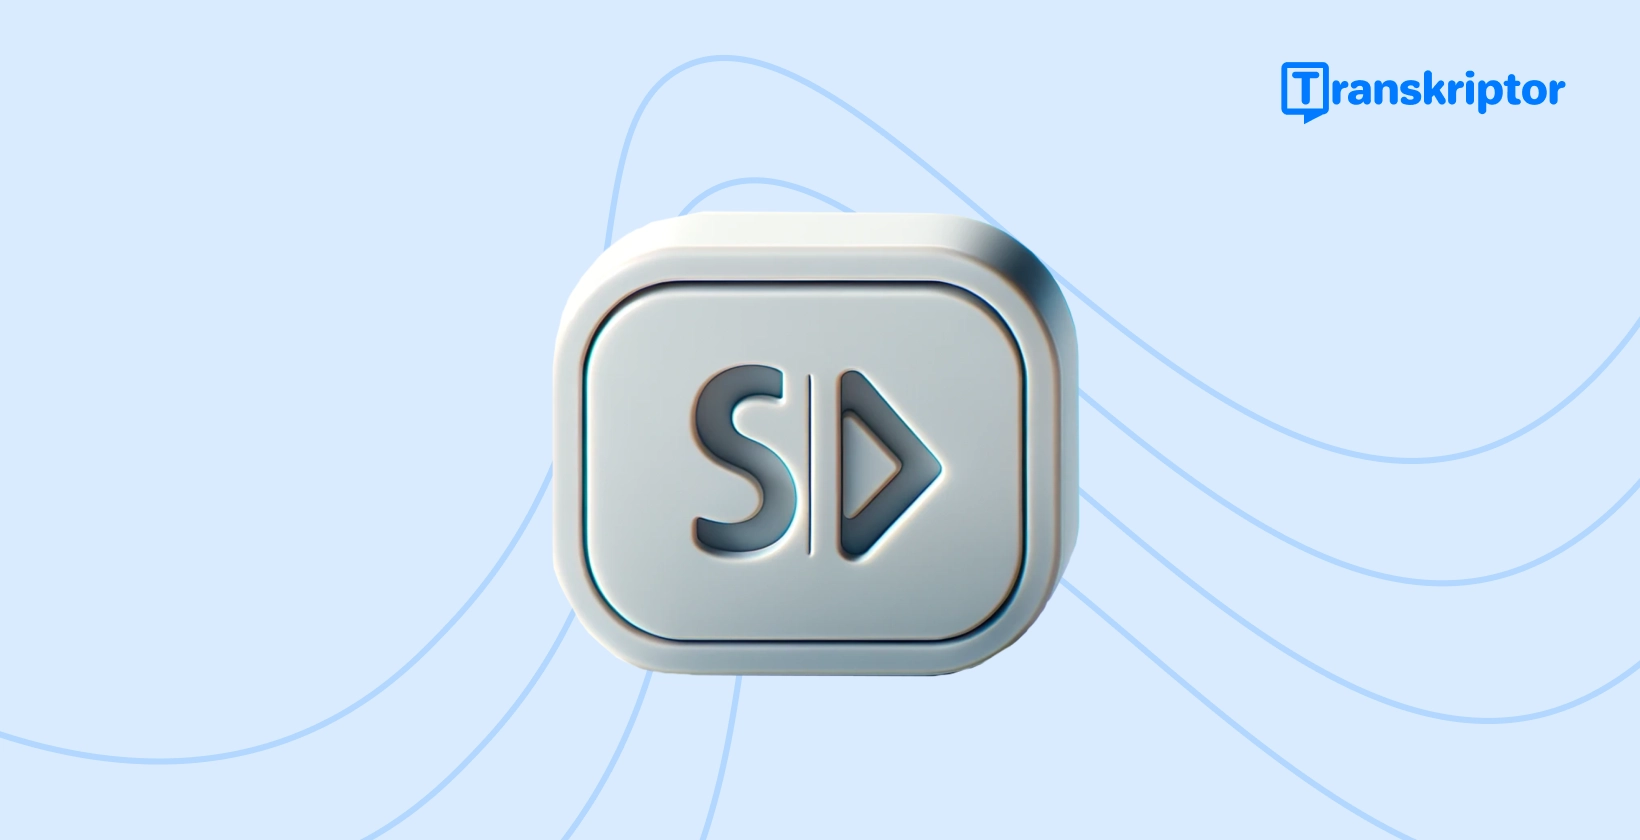 Vodnik za uporabo podnapisov z ikono gumba za predvajanje »SD« za dostopnost videoposnetkov.